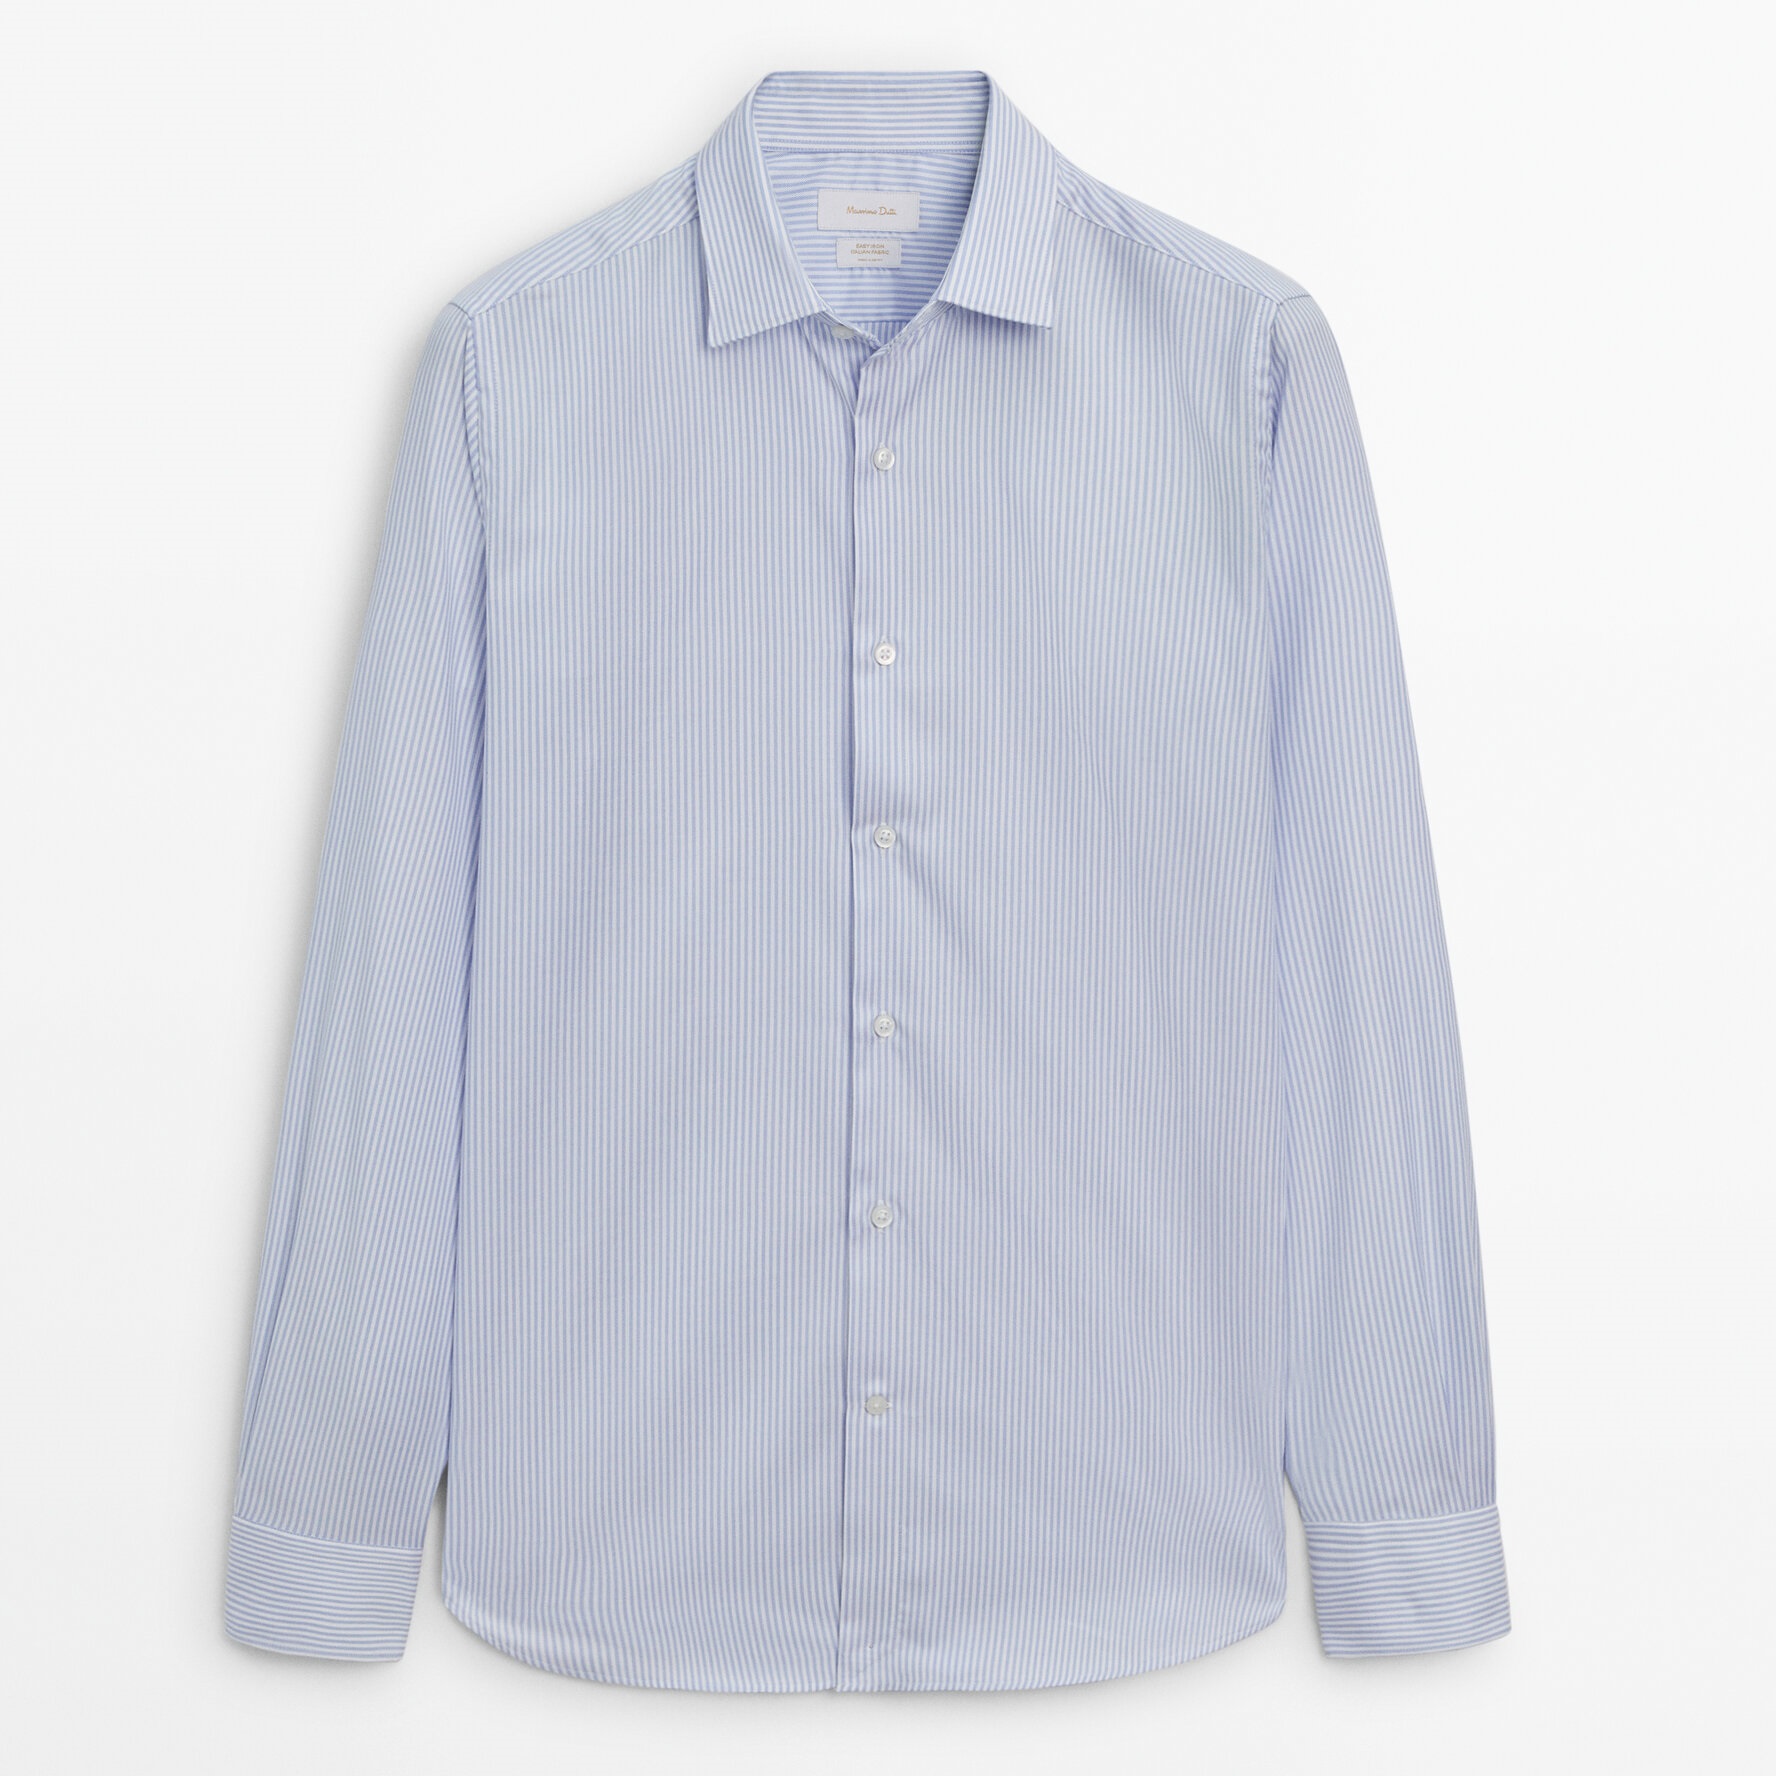 приталенная полосатая оксфордская рубашка из хлопка Рубашка Massimo Dutti Slim Fit Micro-striped, светло-голубой